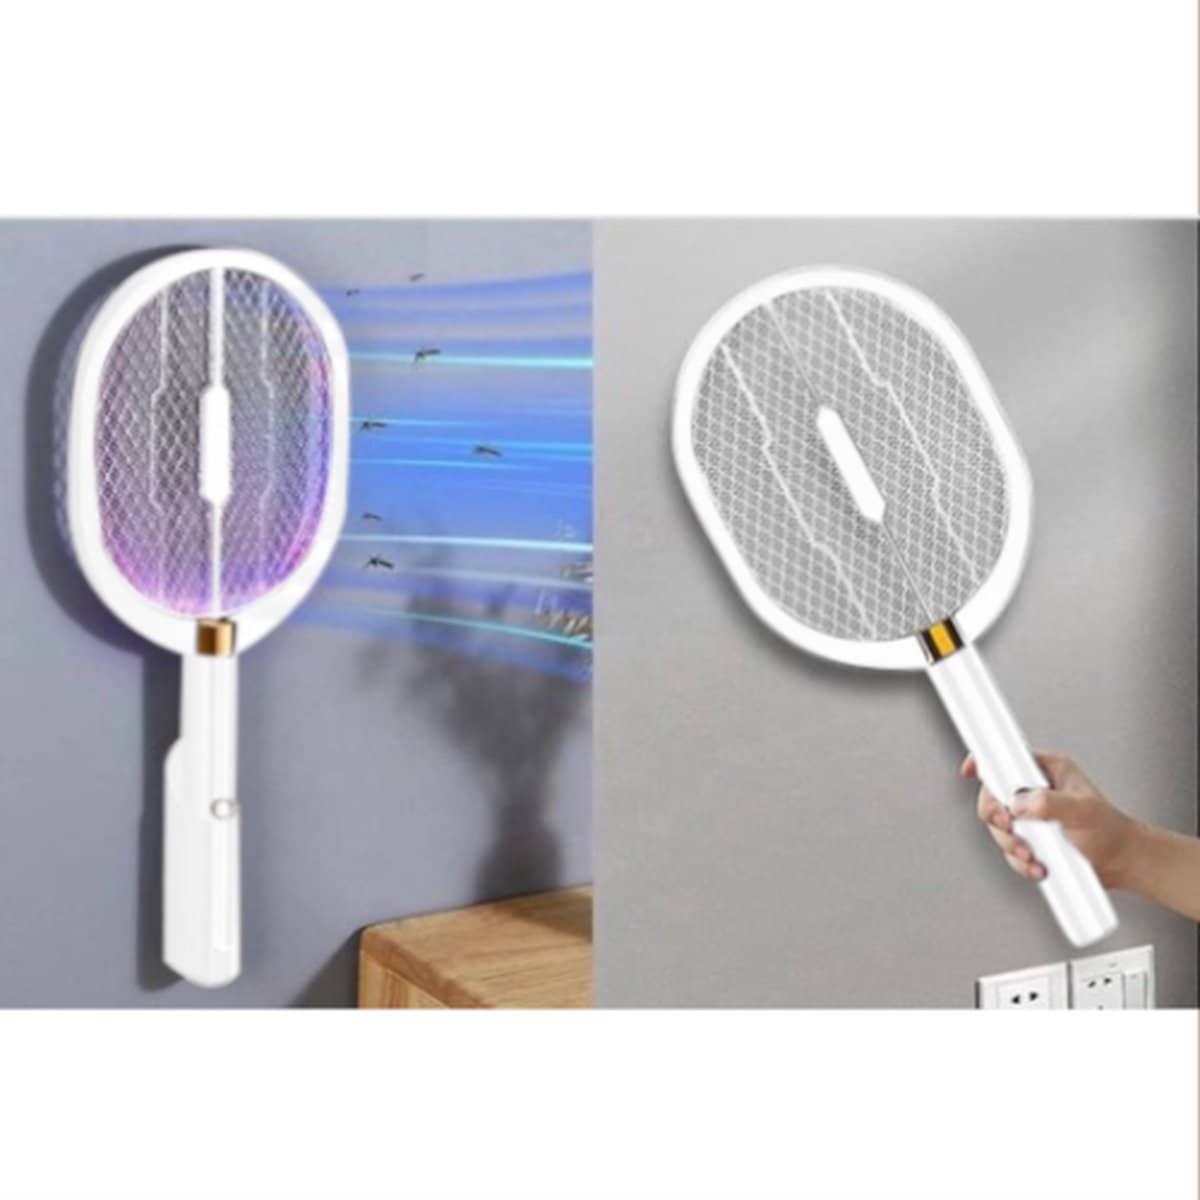 BP Elektrische Vliegenmepper – Elektrische Muggenlamp. Vliegenmepper en muggenlamp in 1